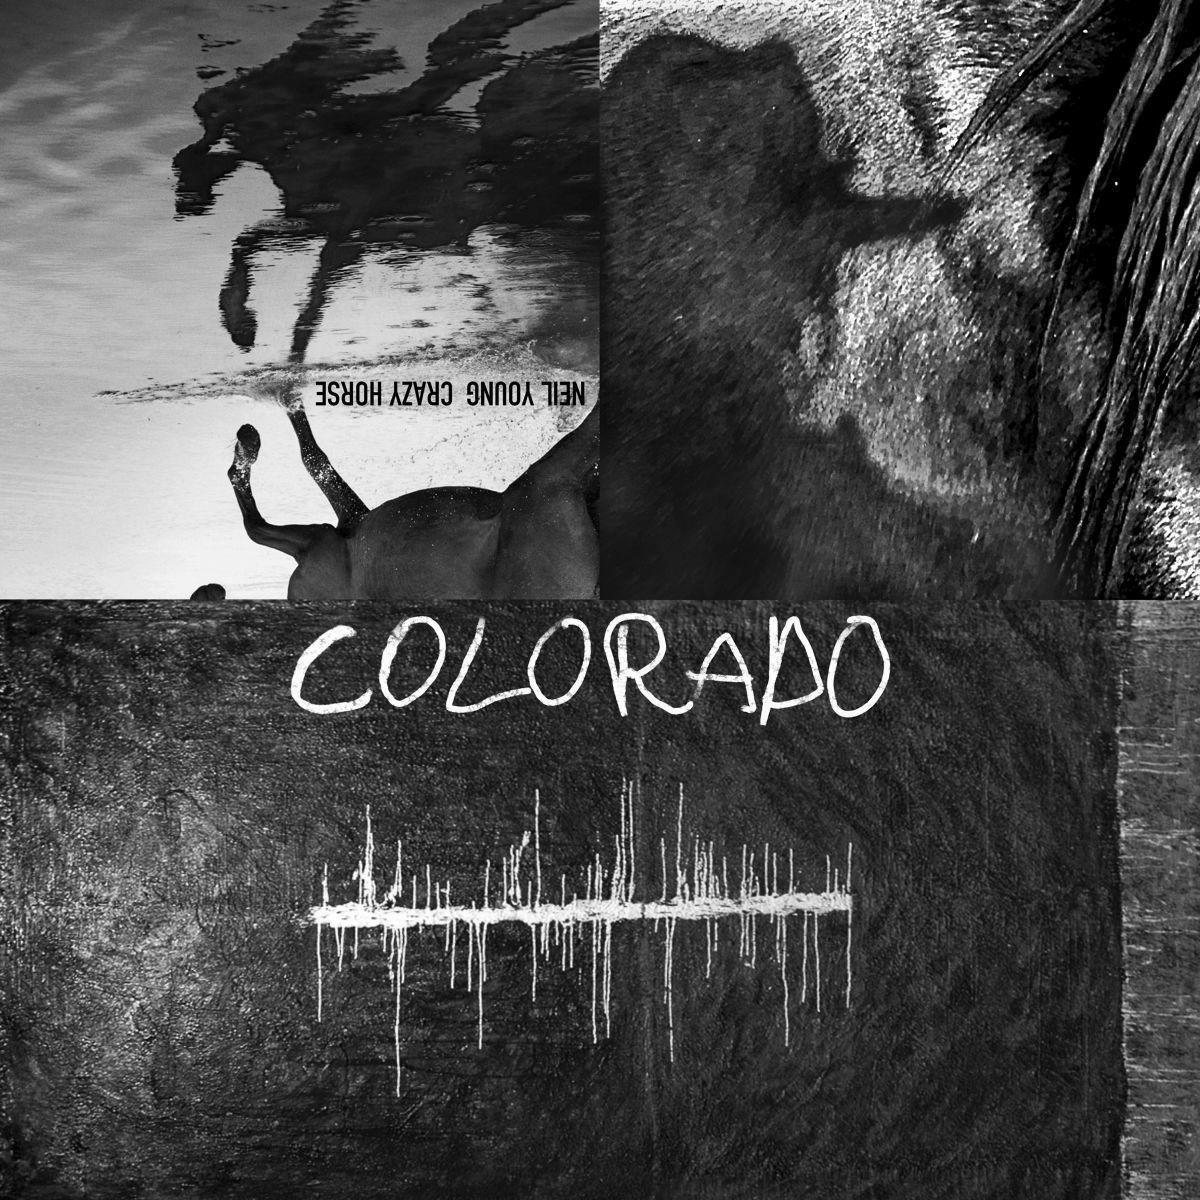 Neil-Young-and-Crazy-Horse-Colorado-album-stream-artwork.jpg.277a506cf73f0496c7b1c8426cbdd799.jpg